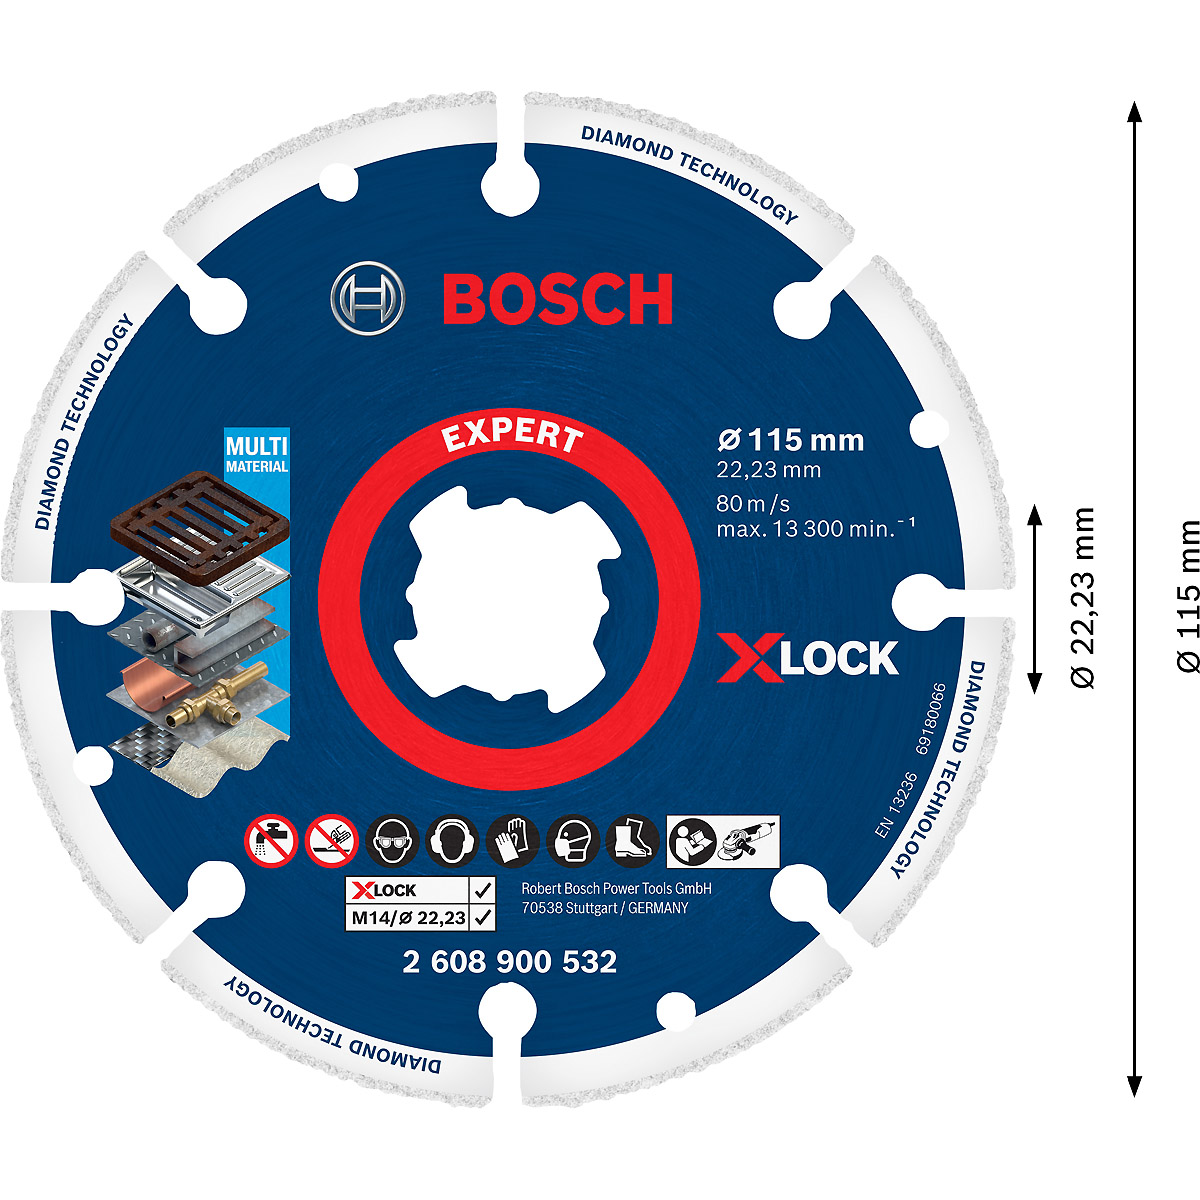 X-LOCK for | | | Bosch | Diamanttrennscheibe Steintrenntechnik Werkstatt Diamant-Trennscheiben Metal Deine tuulzone Best